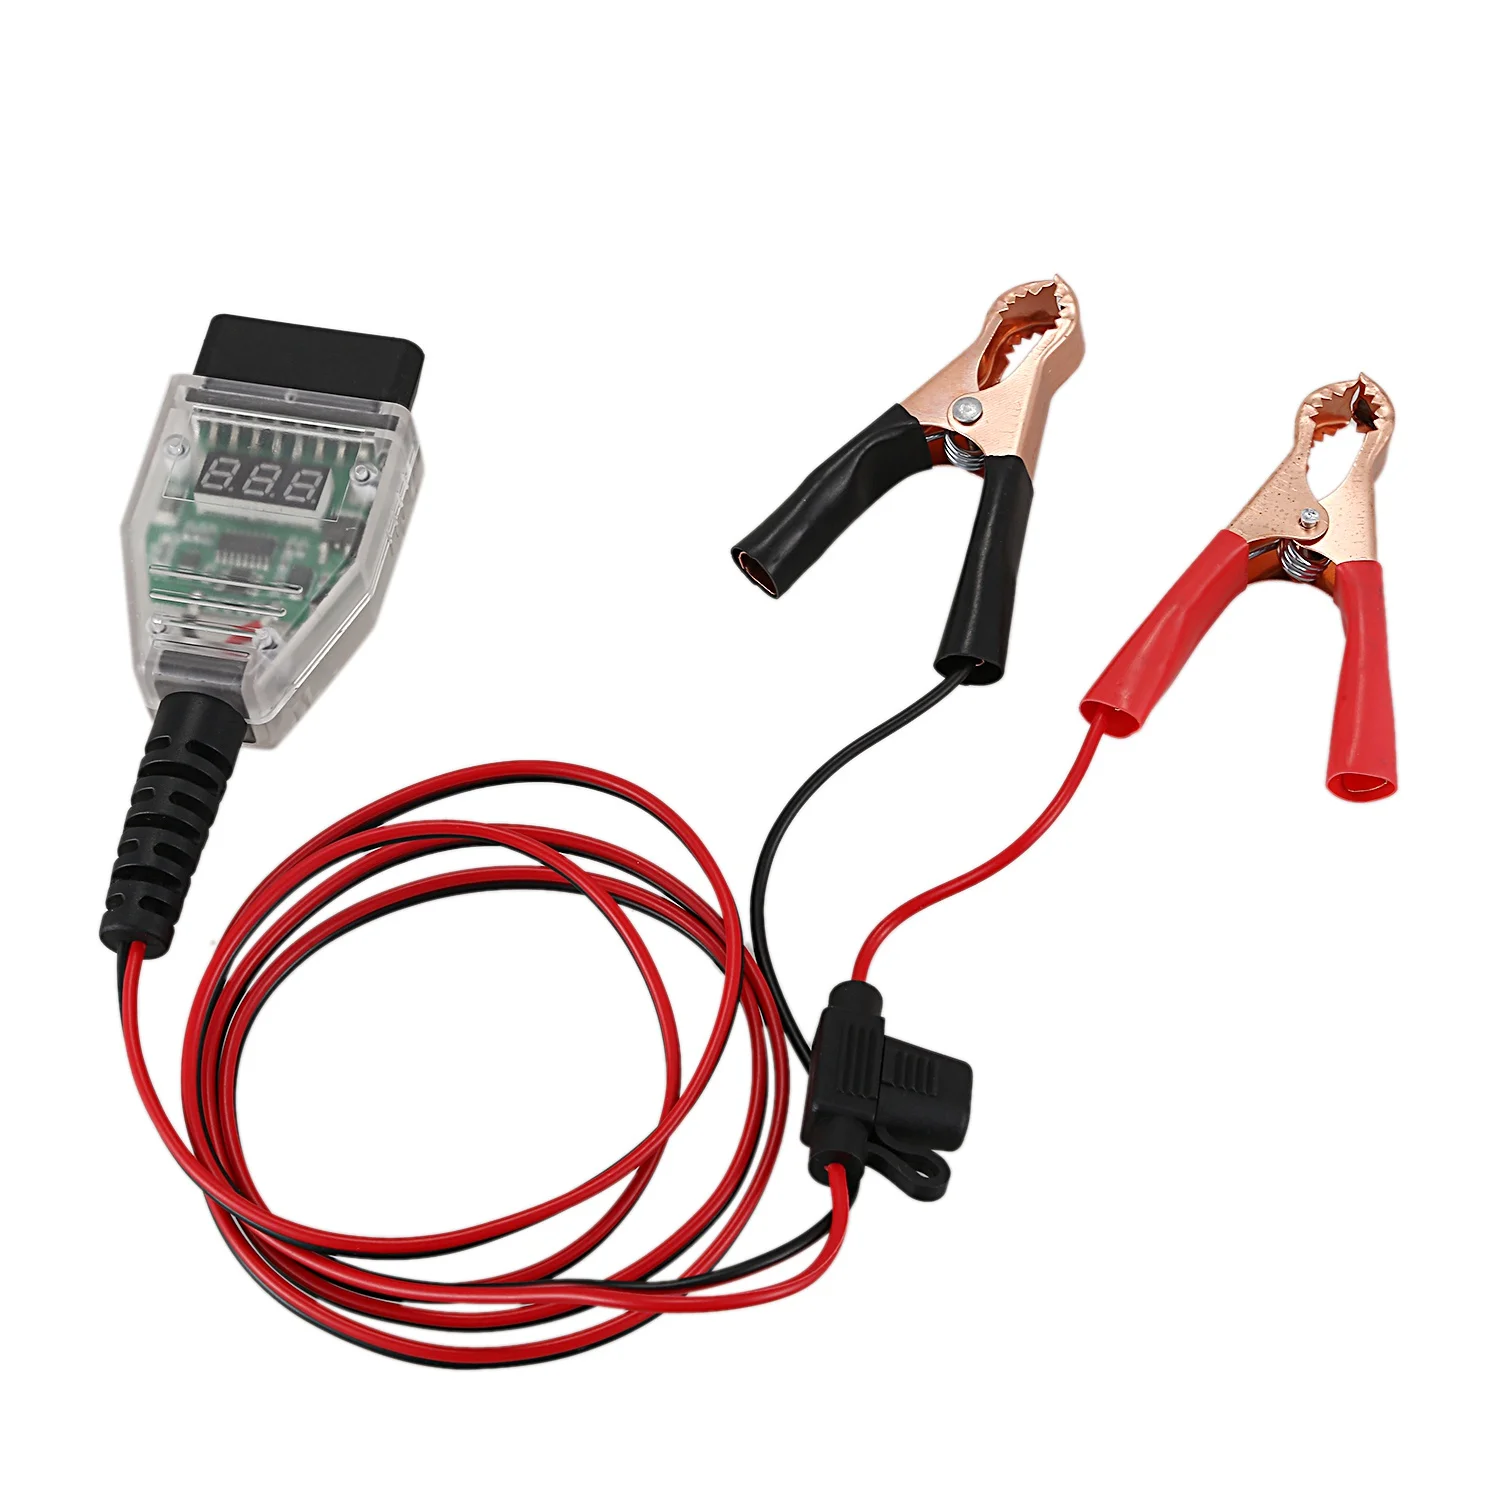 5A Экономия памяти автомобильного компьютера Инструмент для замены батареи OBD2 Зажим для расширительного кабеля Замена цифрового дисплея Утечка батареи